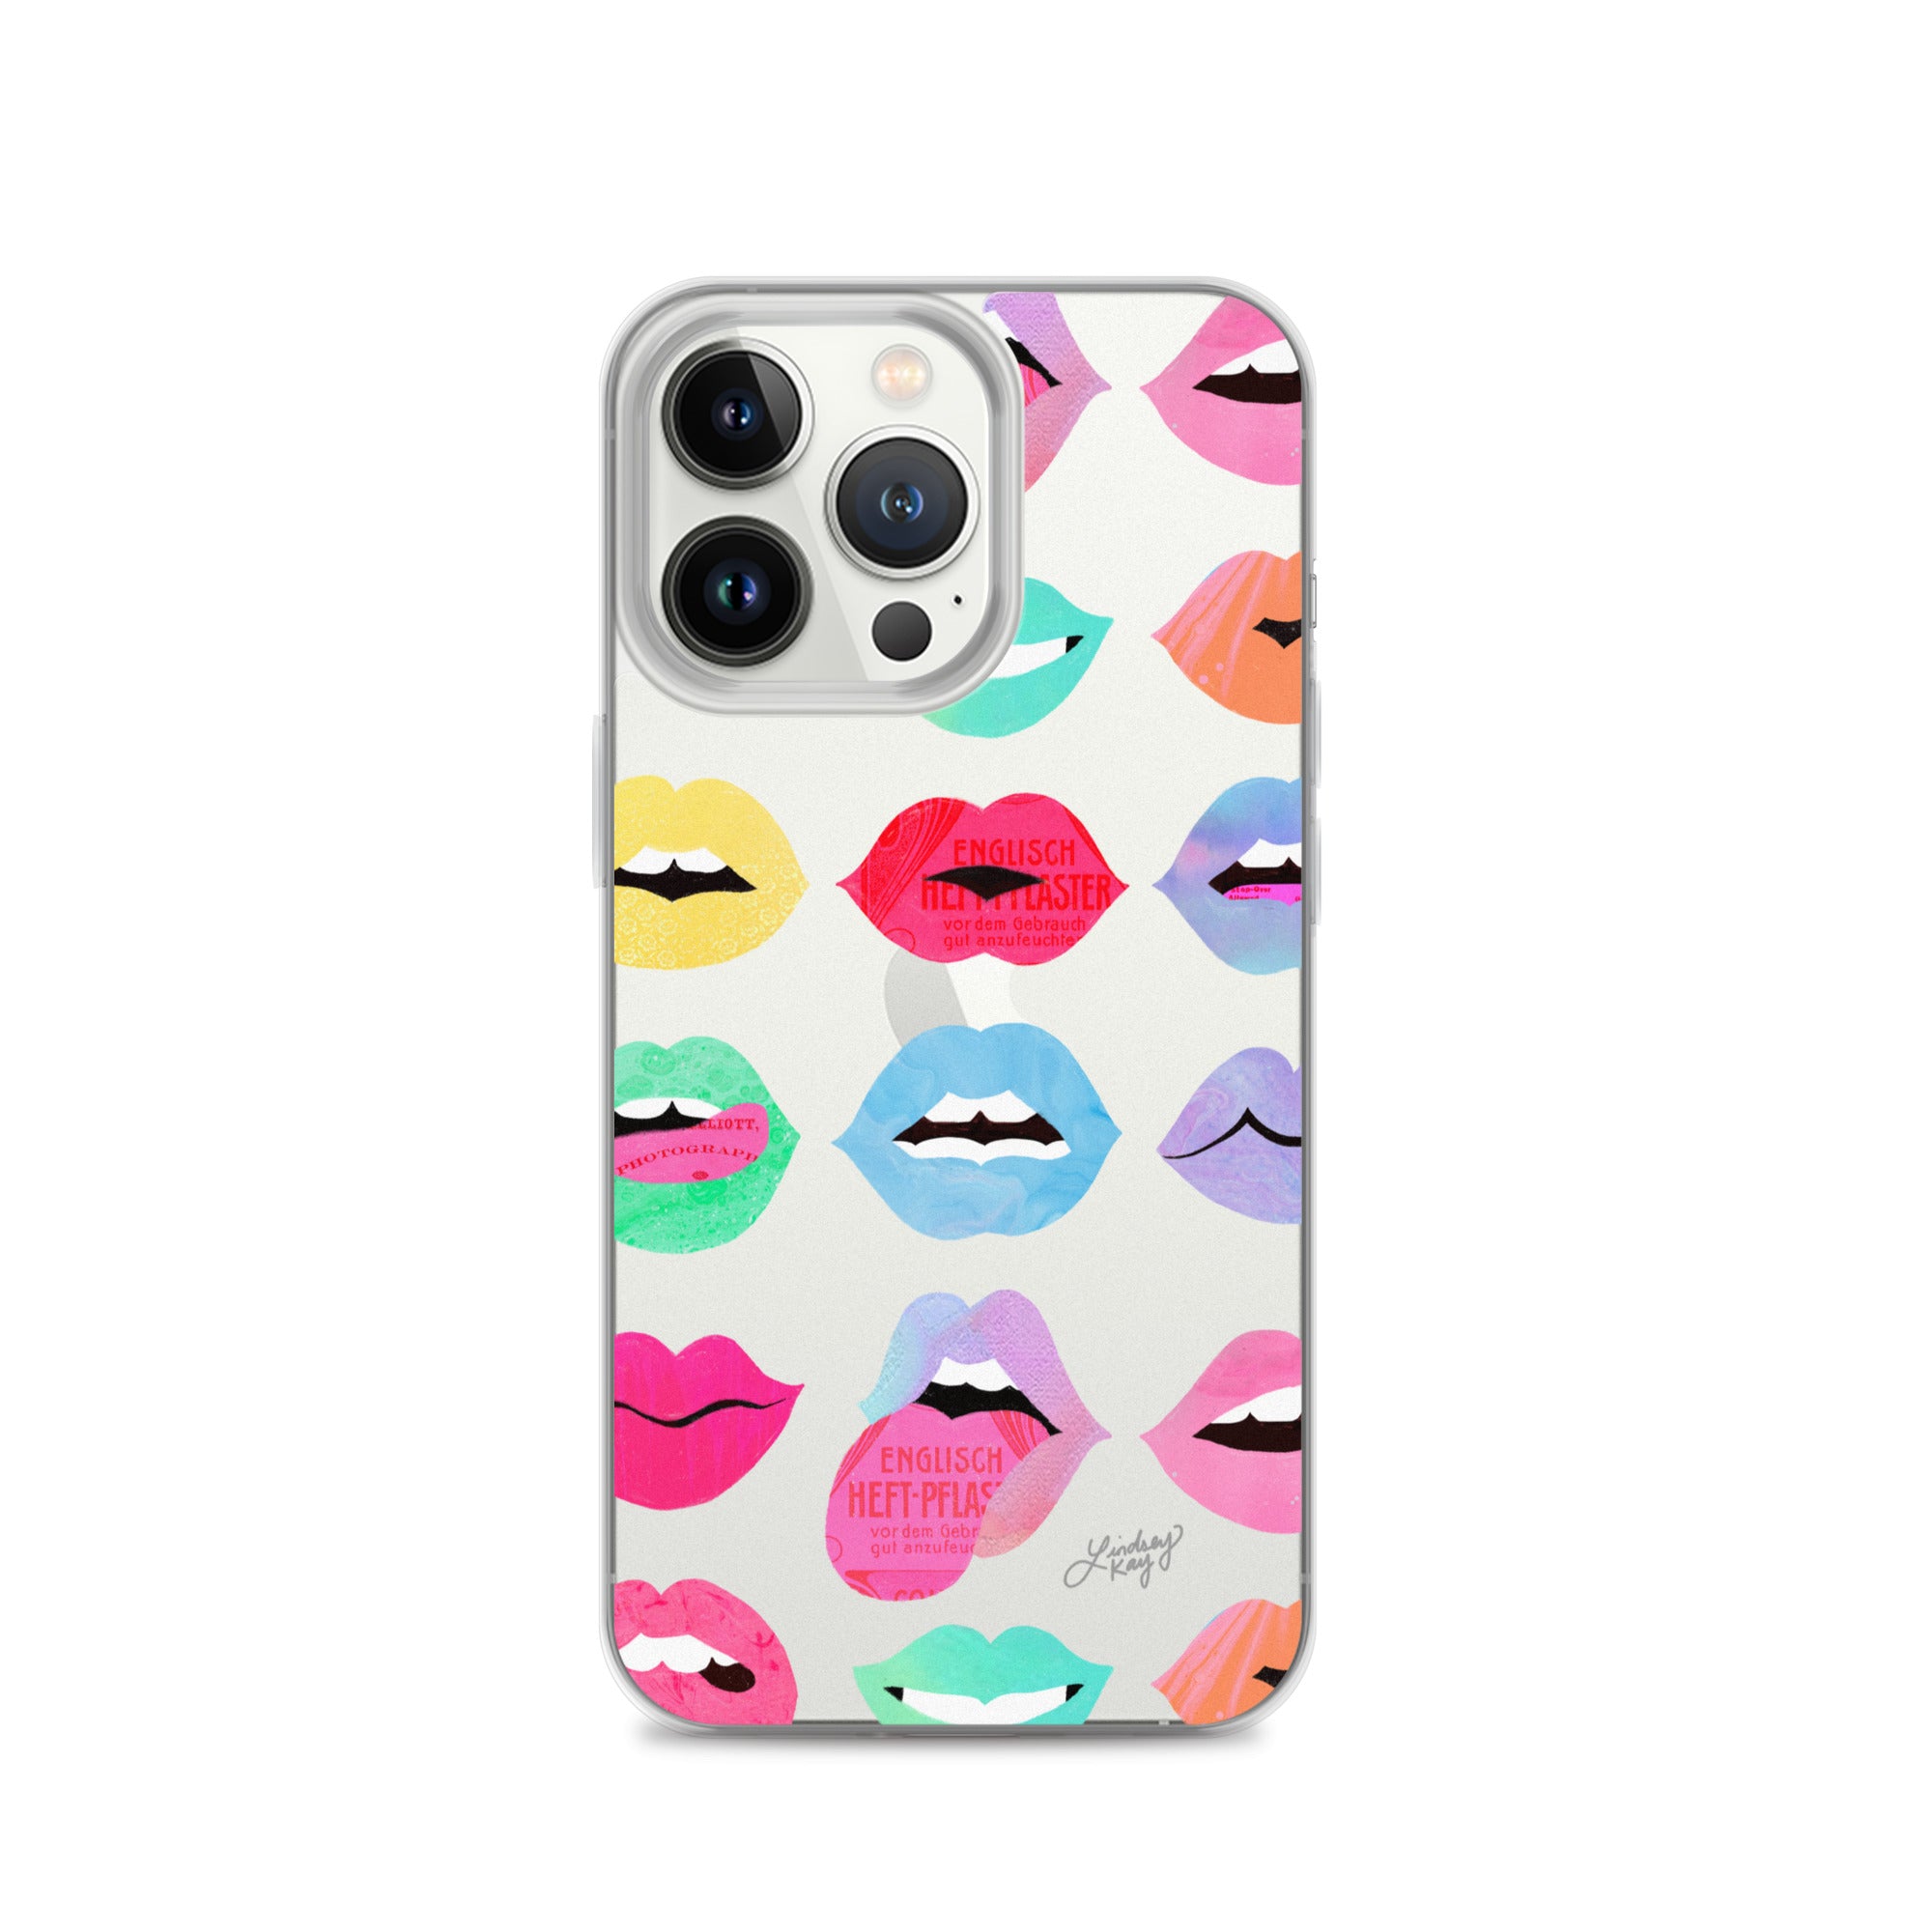 Labios de amor arcoíris - Funda transparente para iPhone®